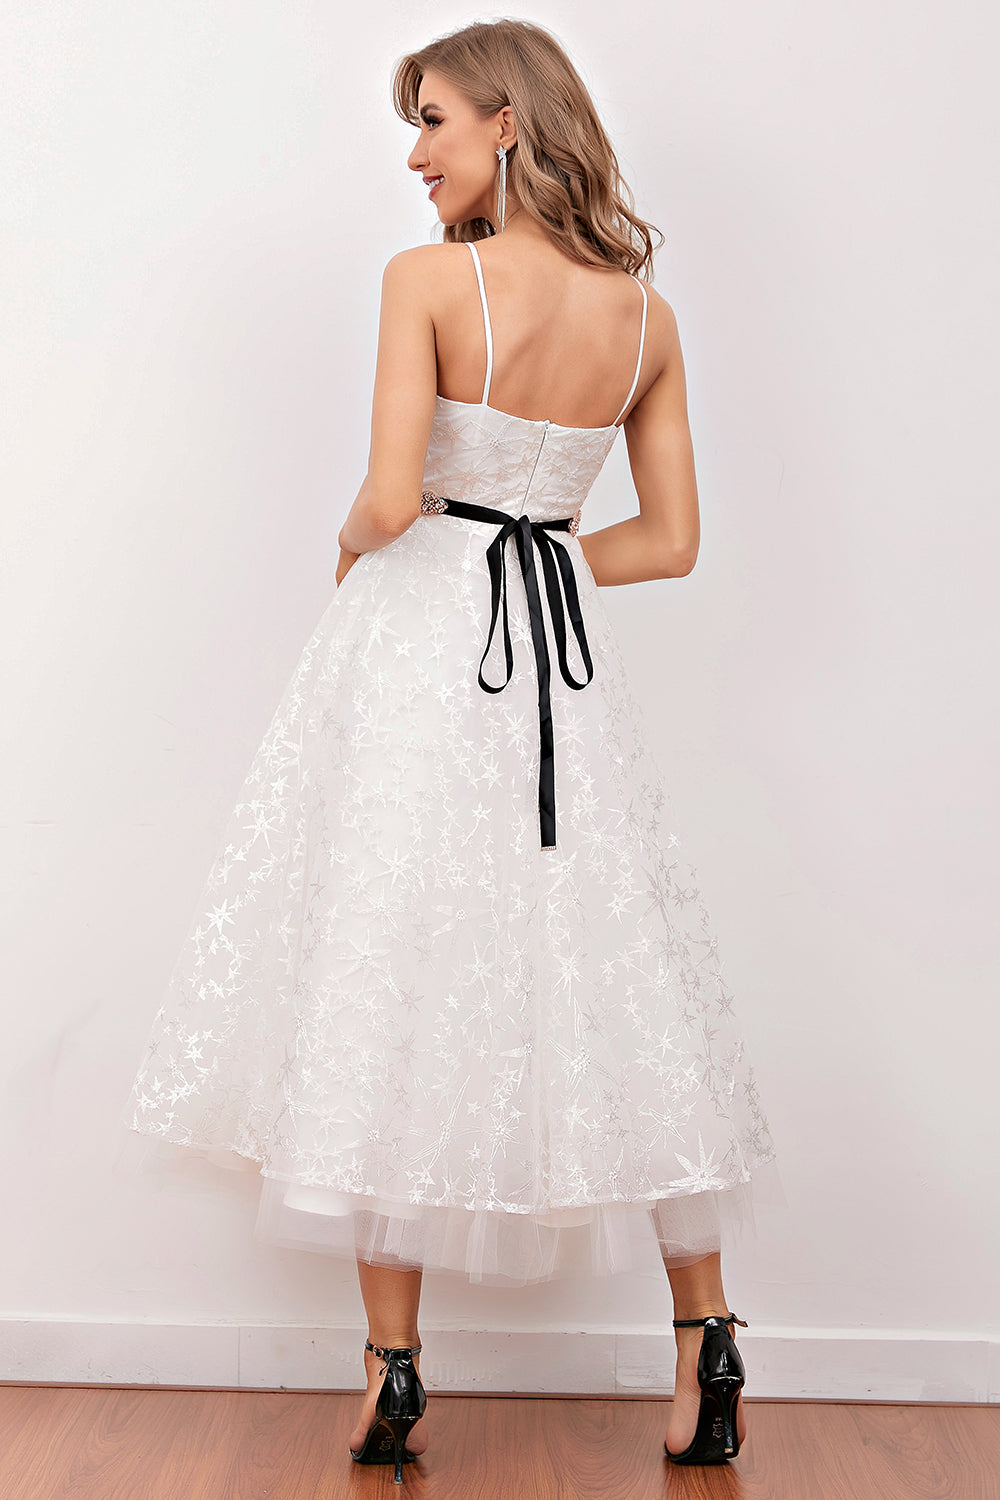 Vestido de novia de tirantes finos de encaje blanco (cinturón no incluido)